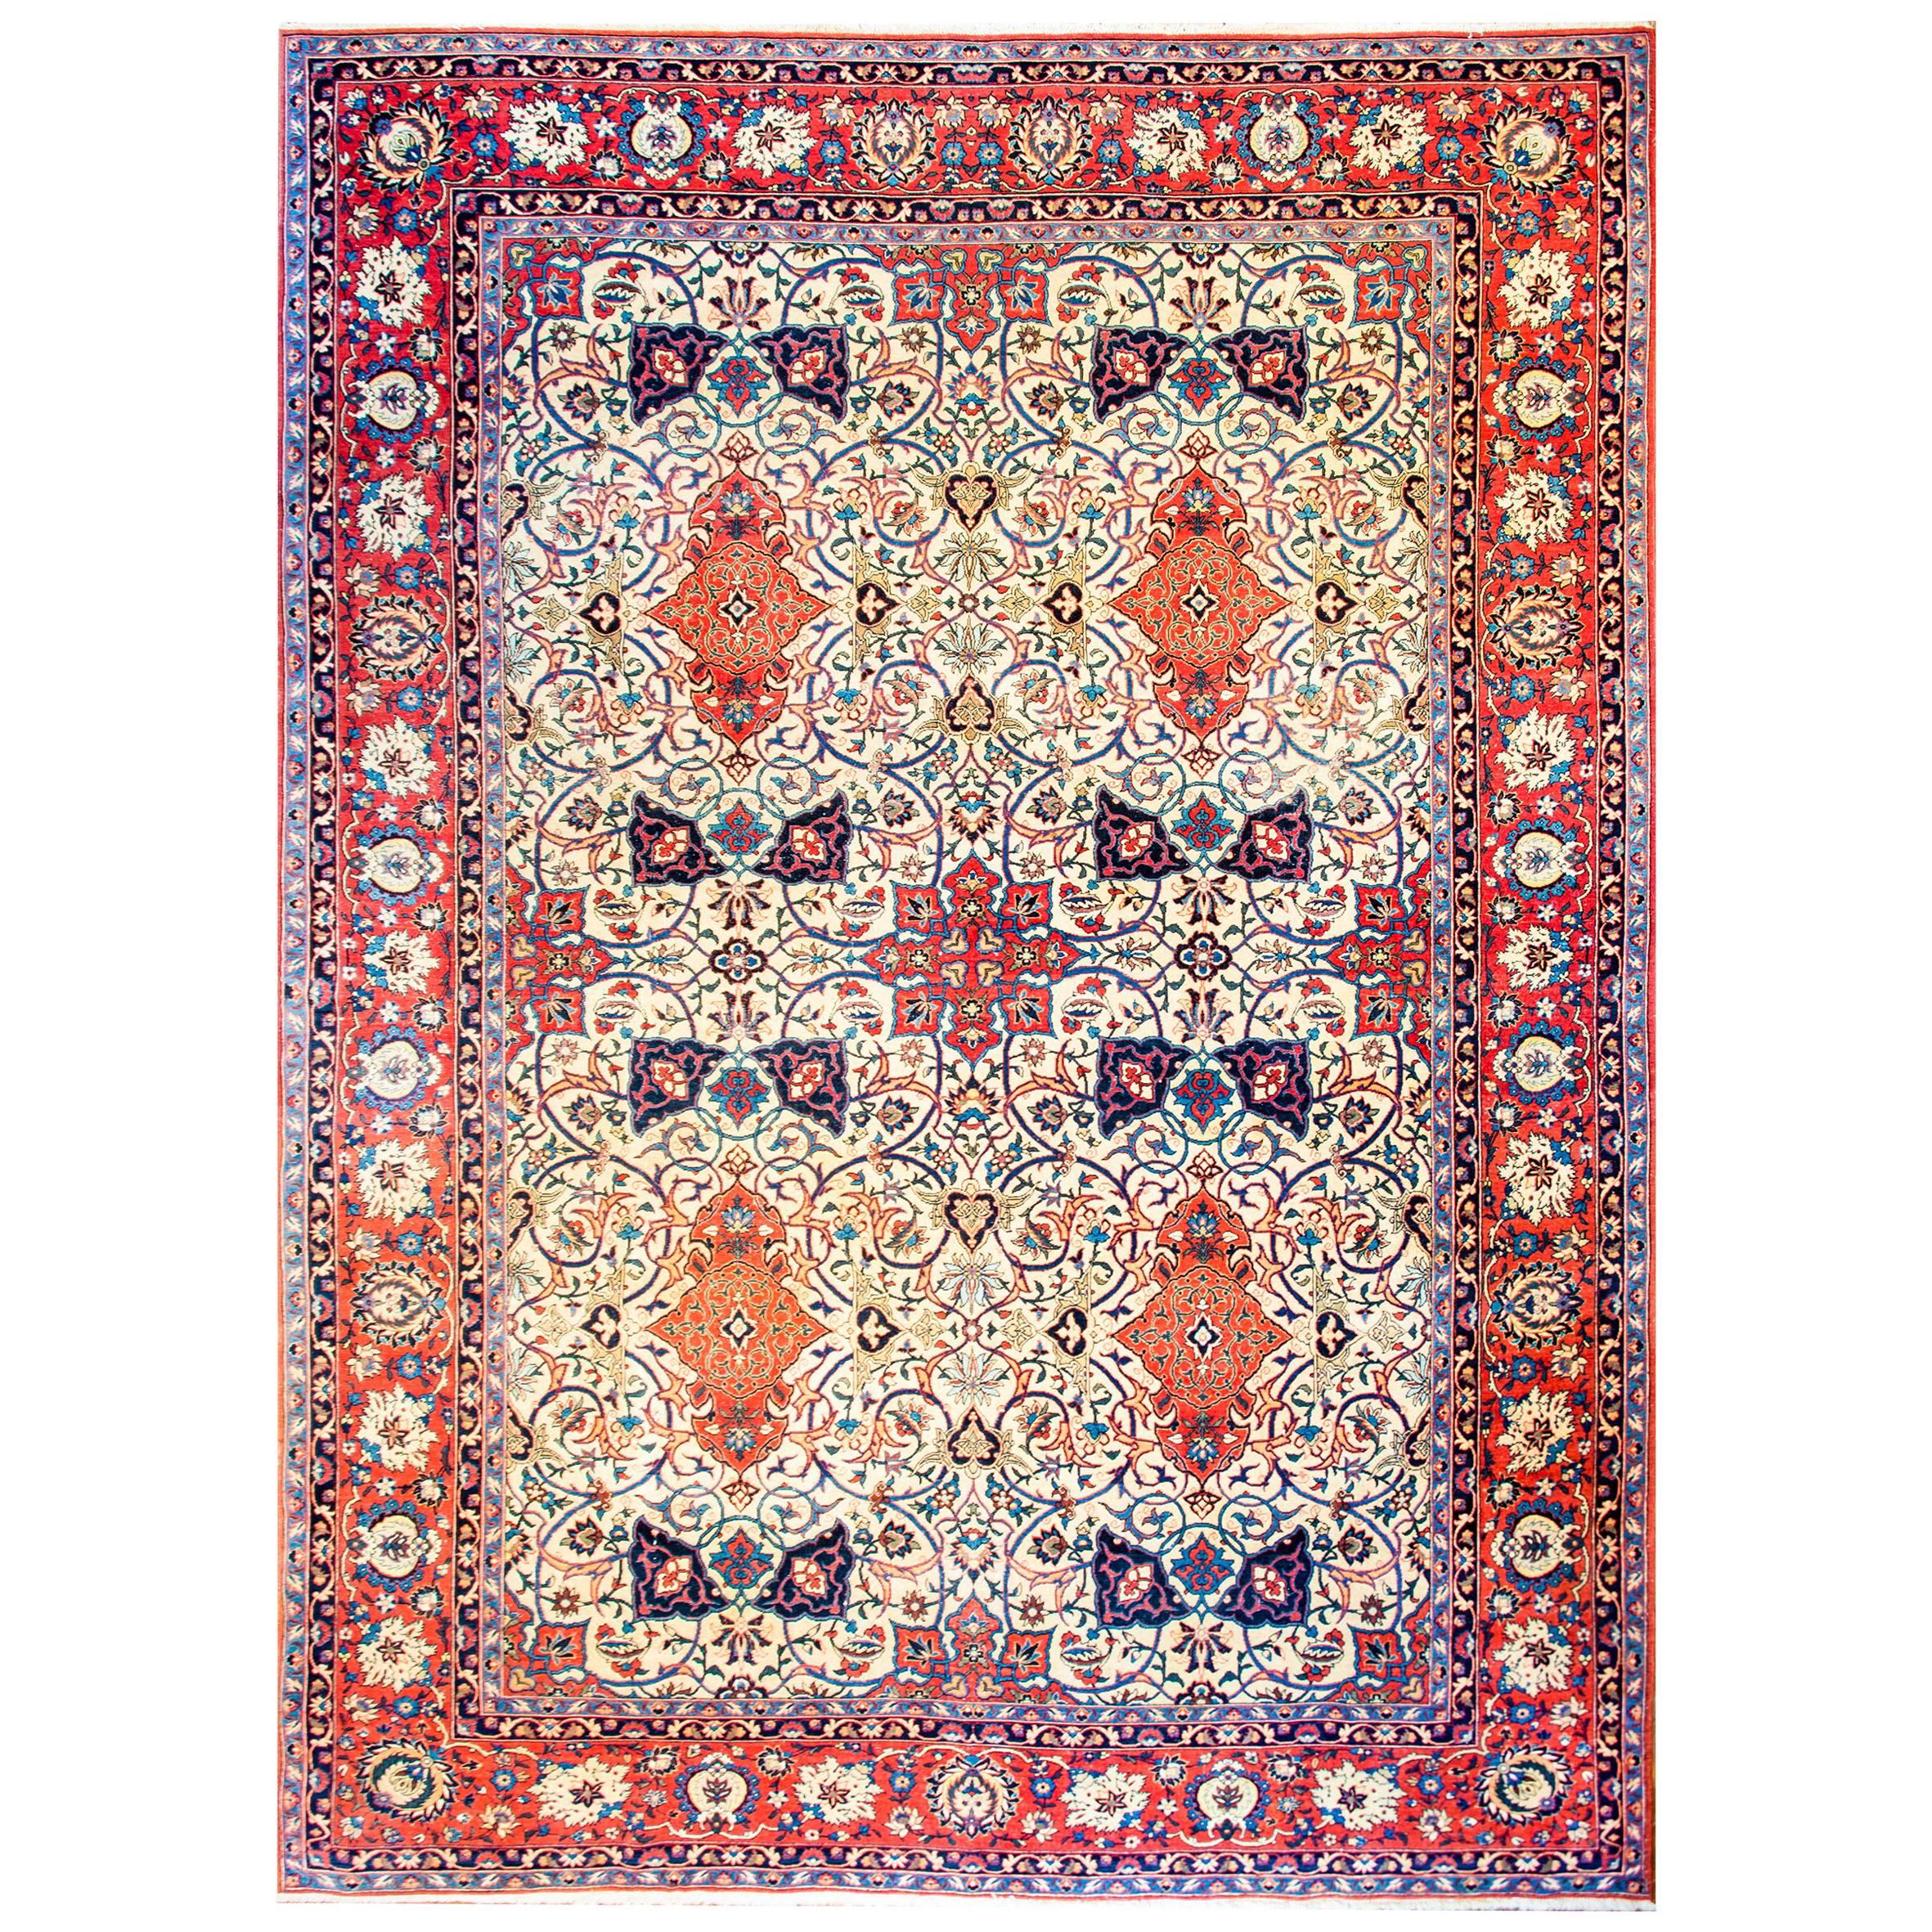 Magnifique tapis persan d'Ispahan du début du 20e siècle